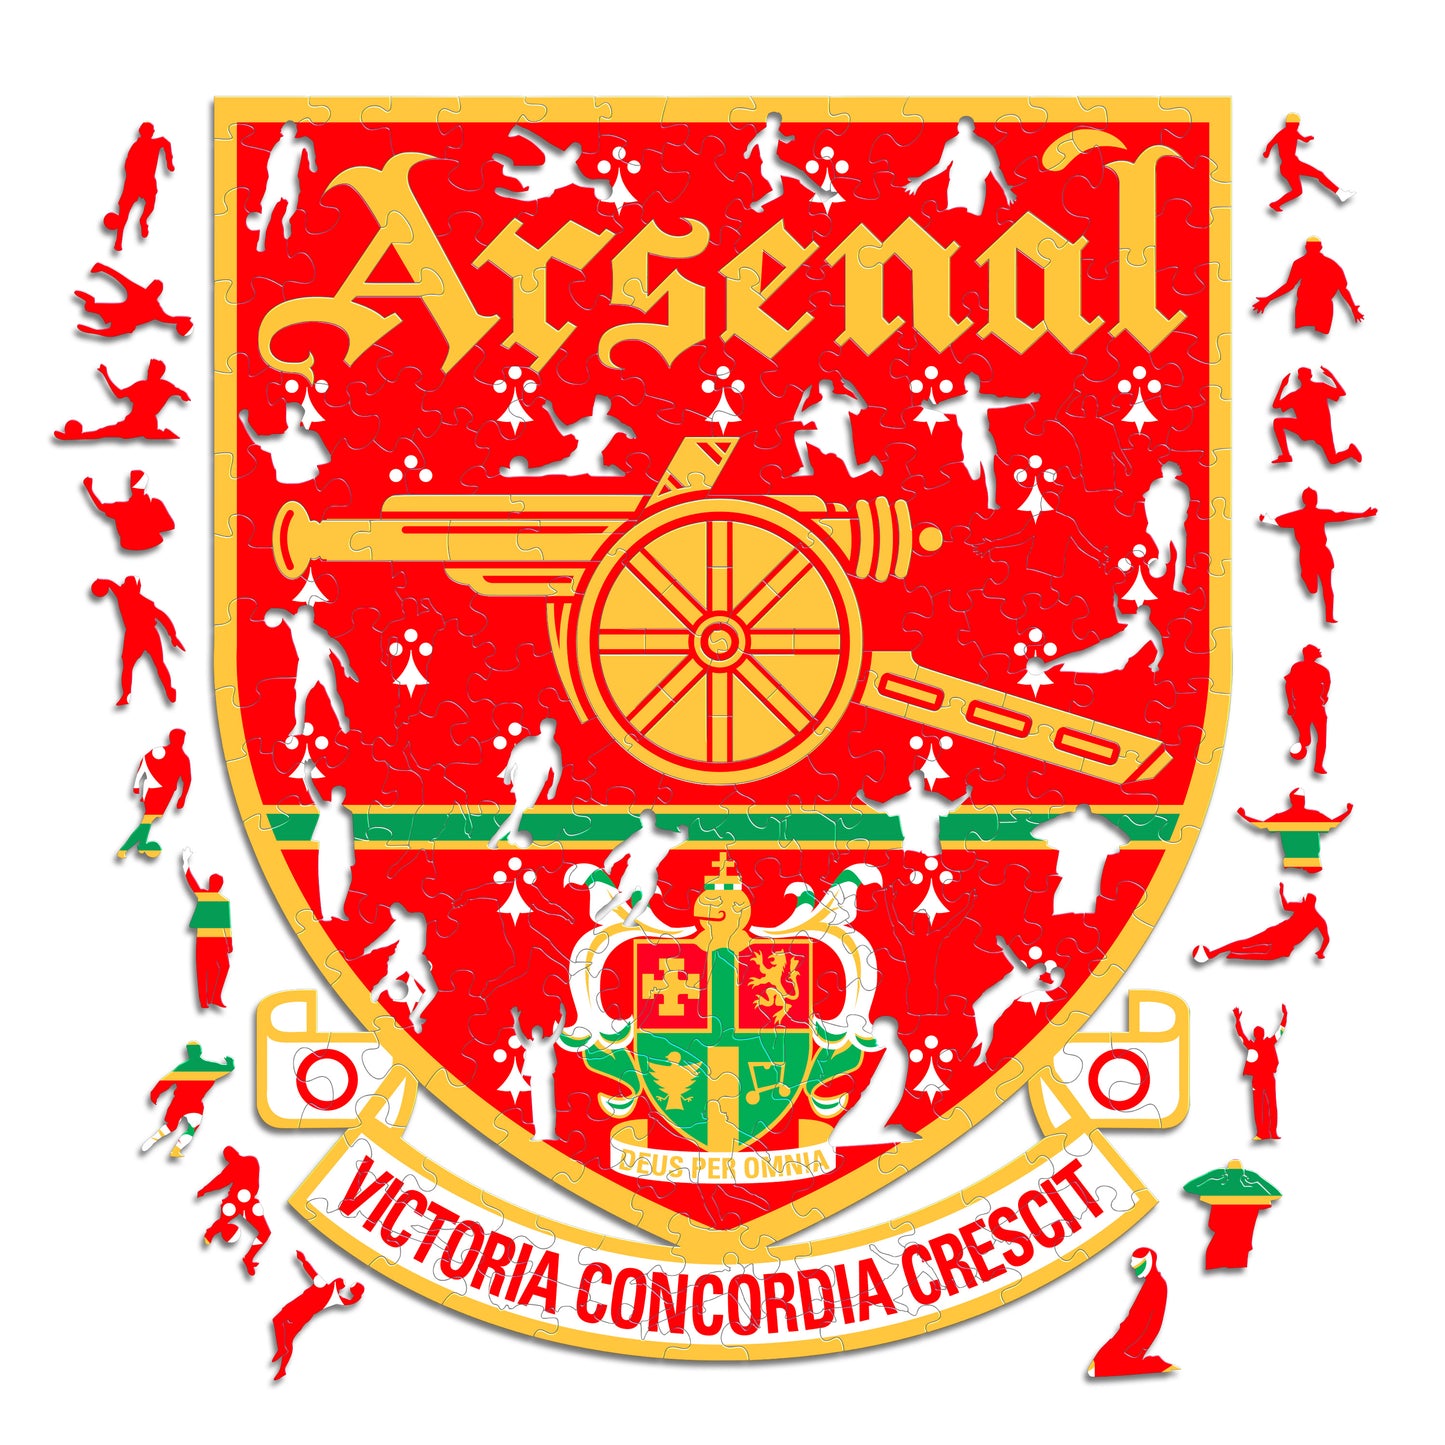 2 PACK Arsenal FC® Escudo + Retro Logo